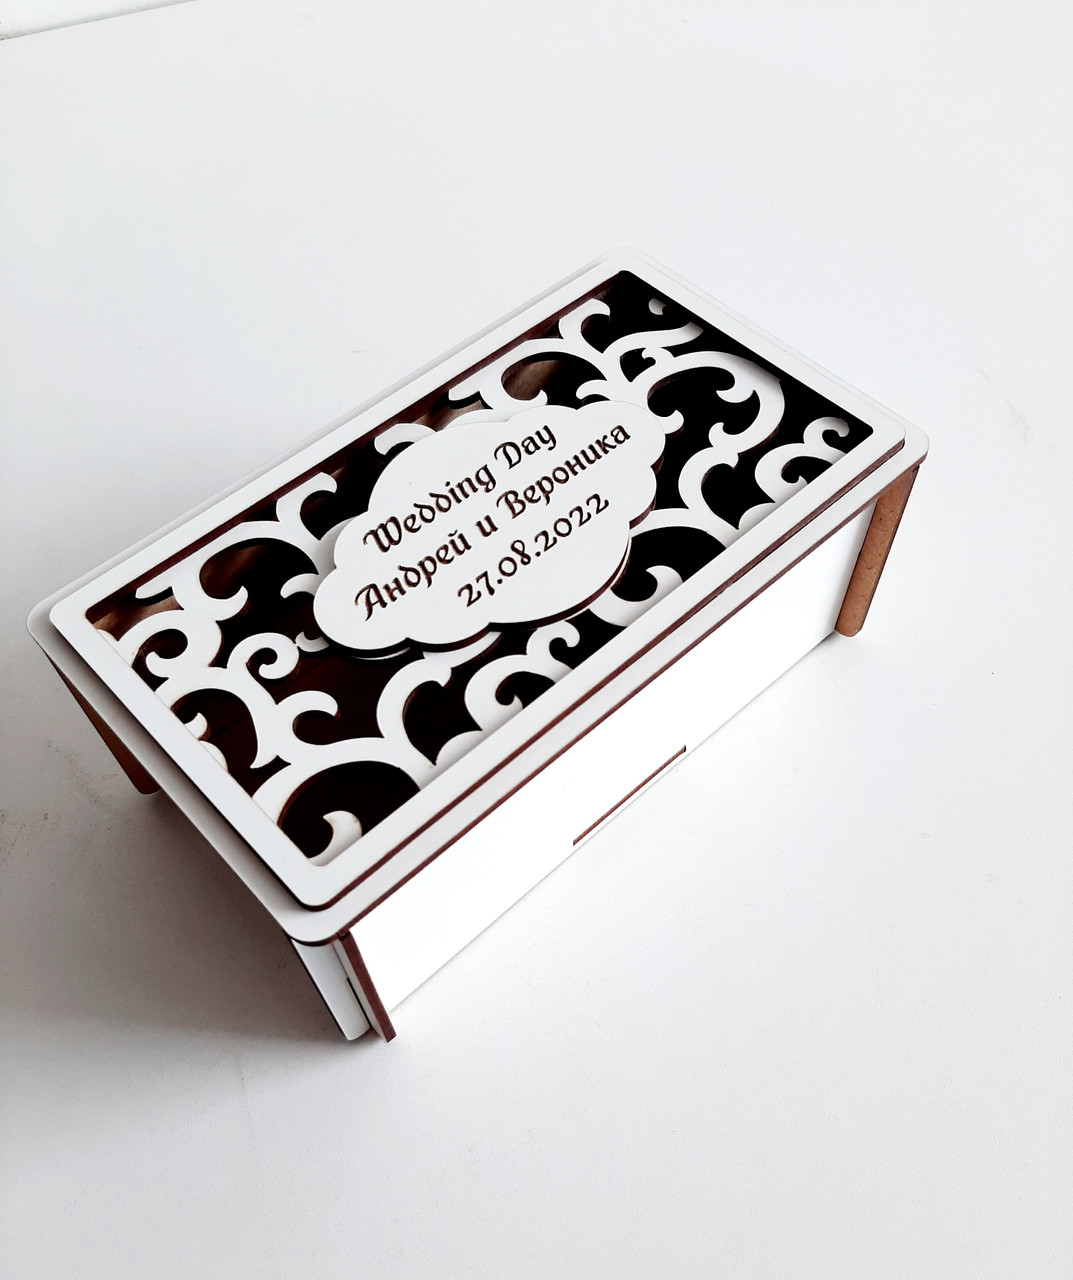 Коробка-открытка "Wedding Day"  c индивидуальной гравировкой